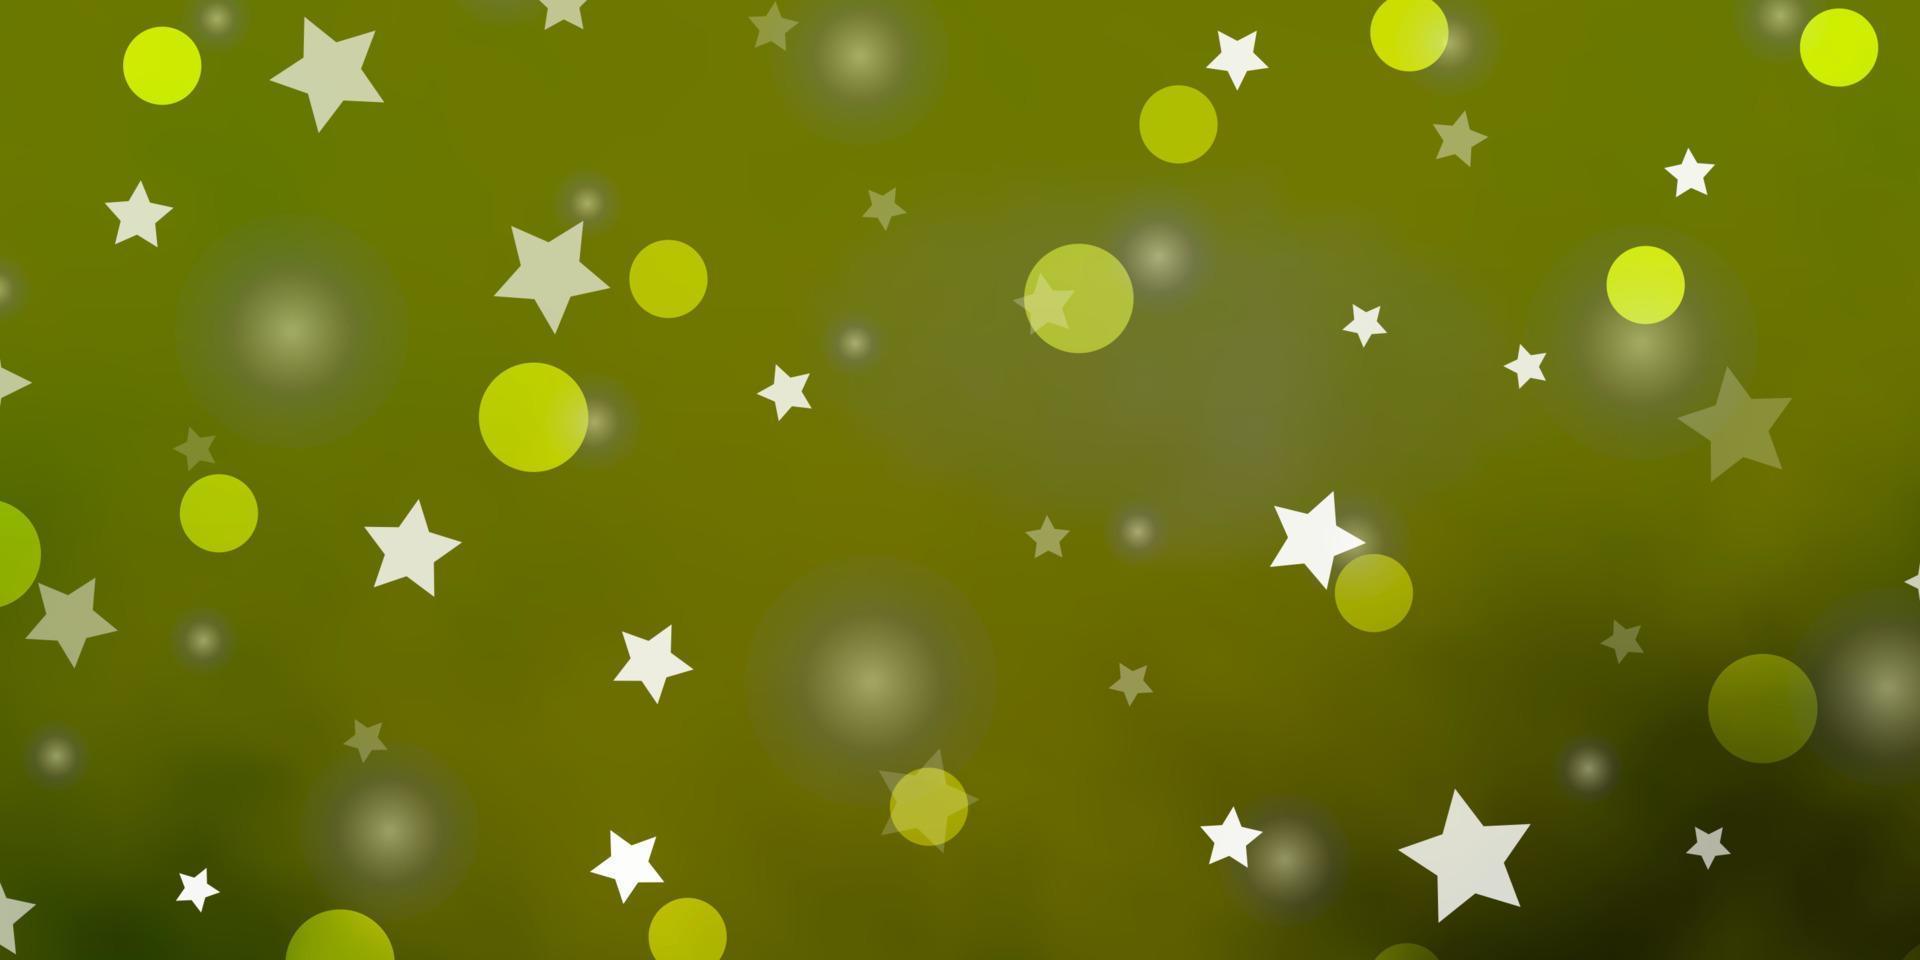 modelo de vetor verde e amarelo claro com círculos, estrelas.